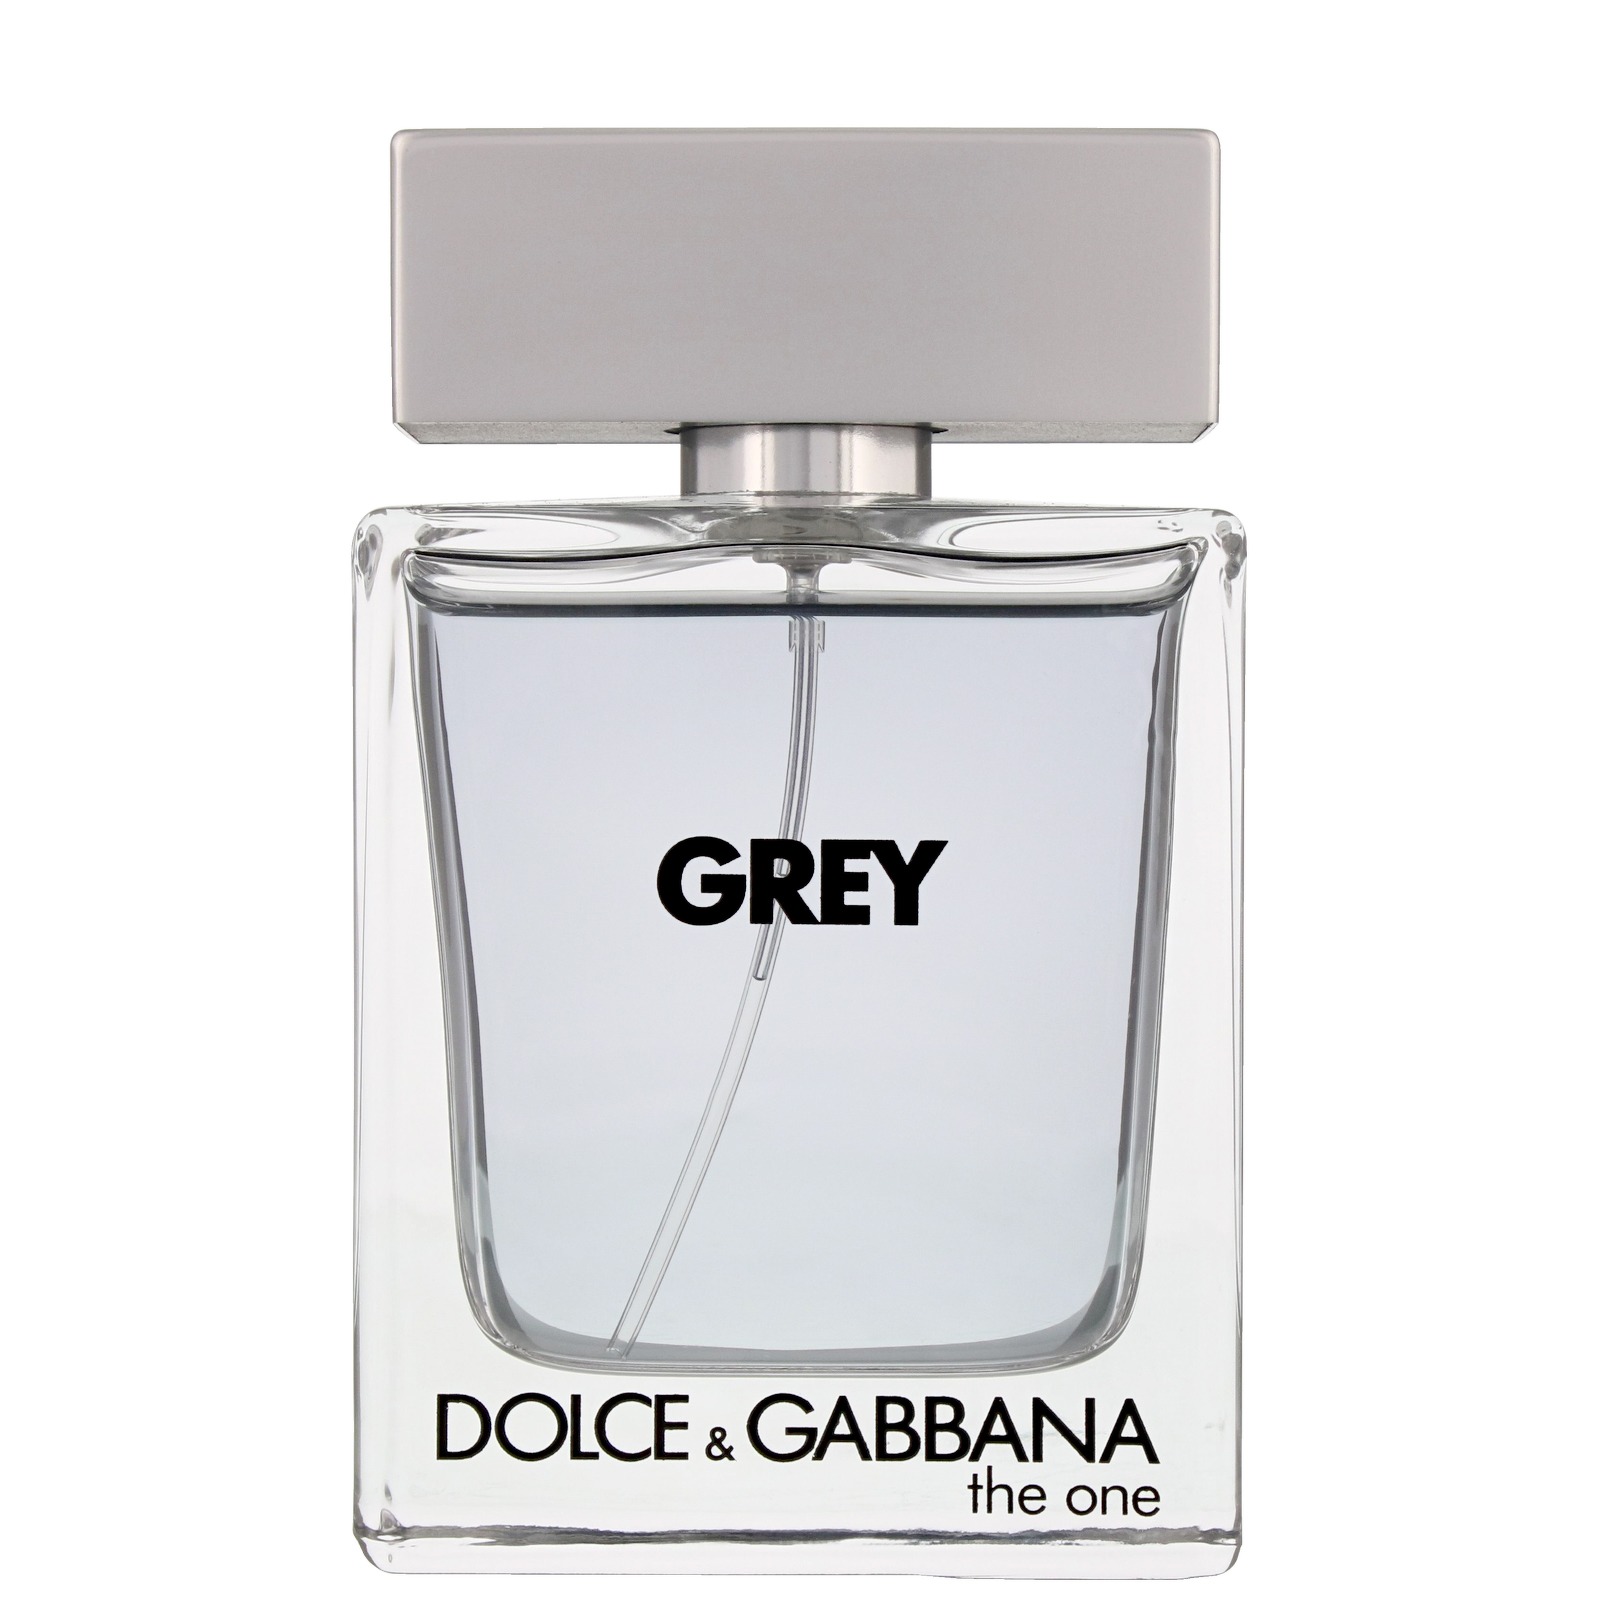 dolce & gabbana grey